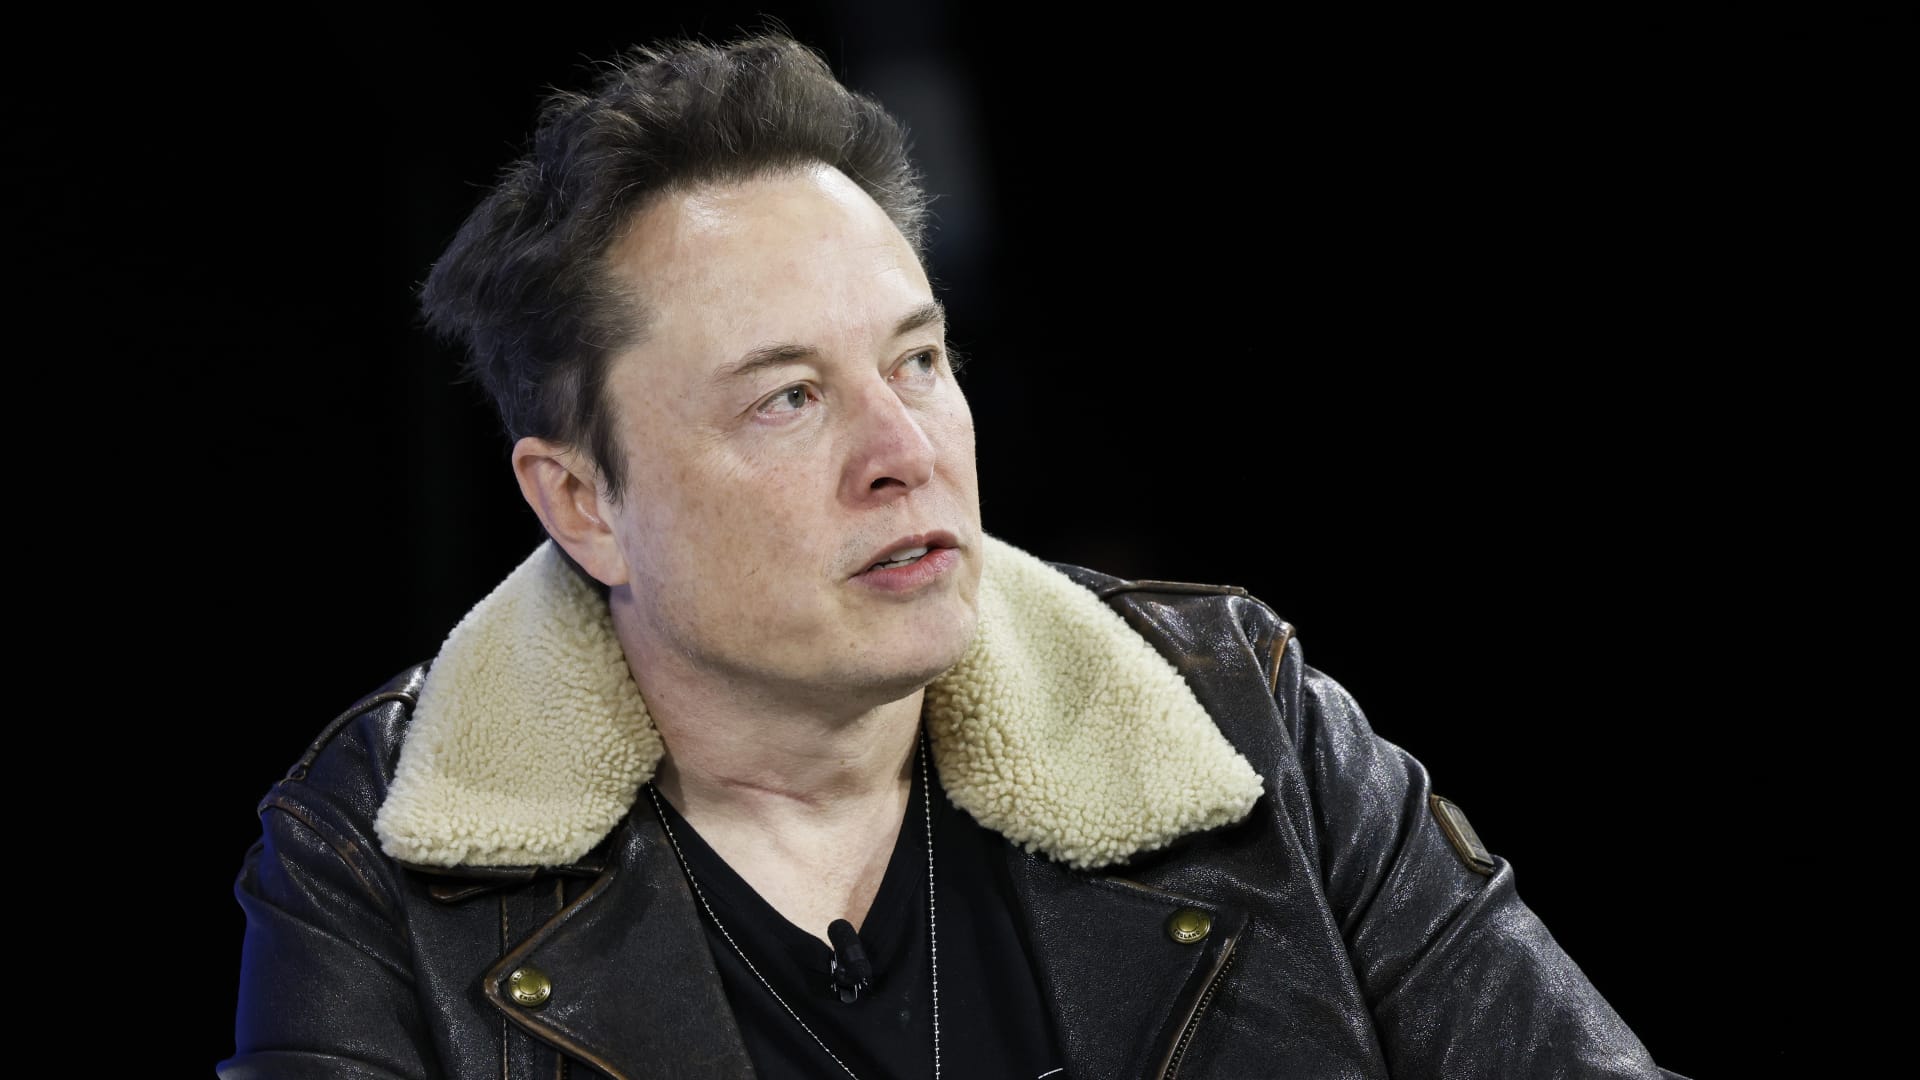 Judge voids Elon Musk's  billion Tesla compensation, shares slide